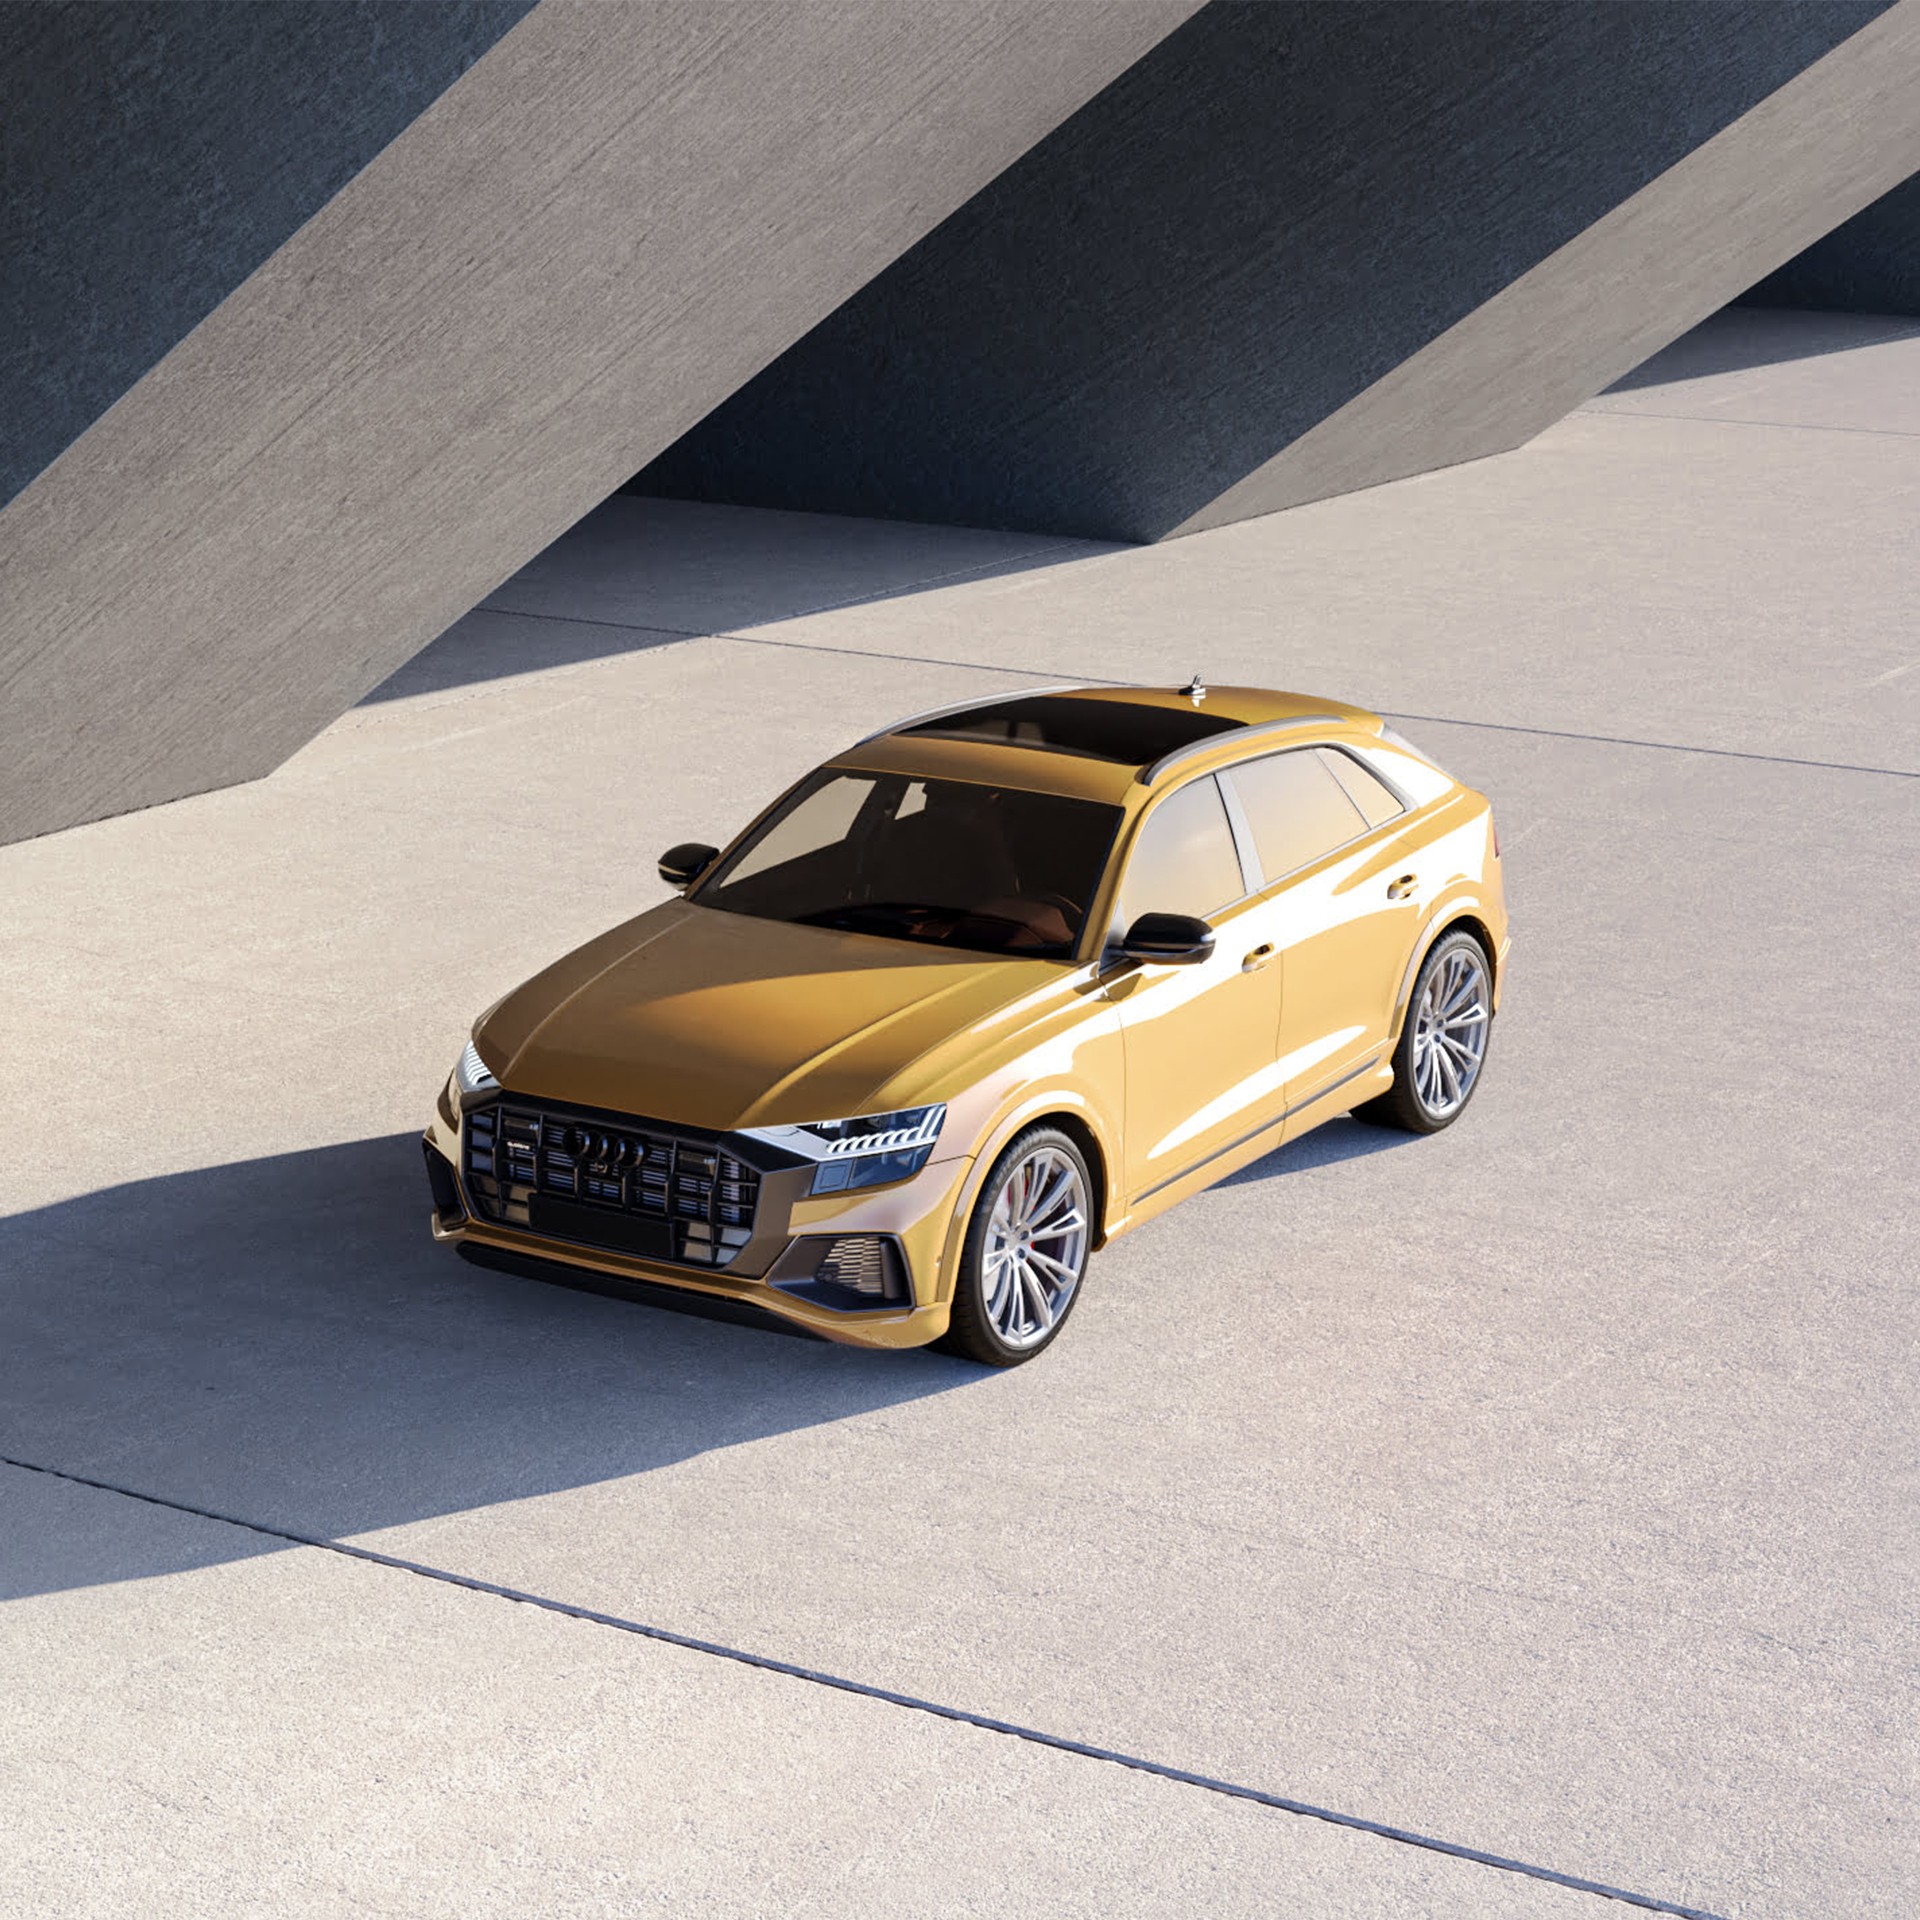 Produktvisualisierung eines gelben Audi bei Sonnenschein